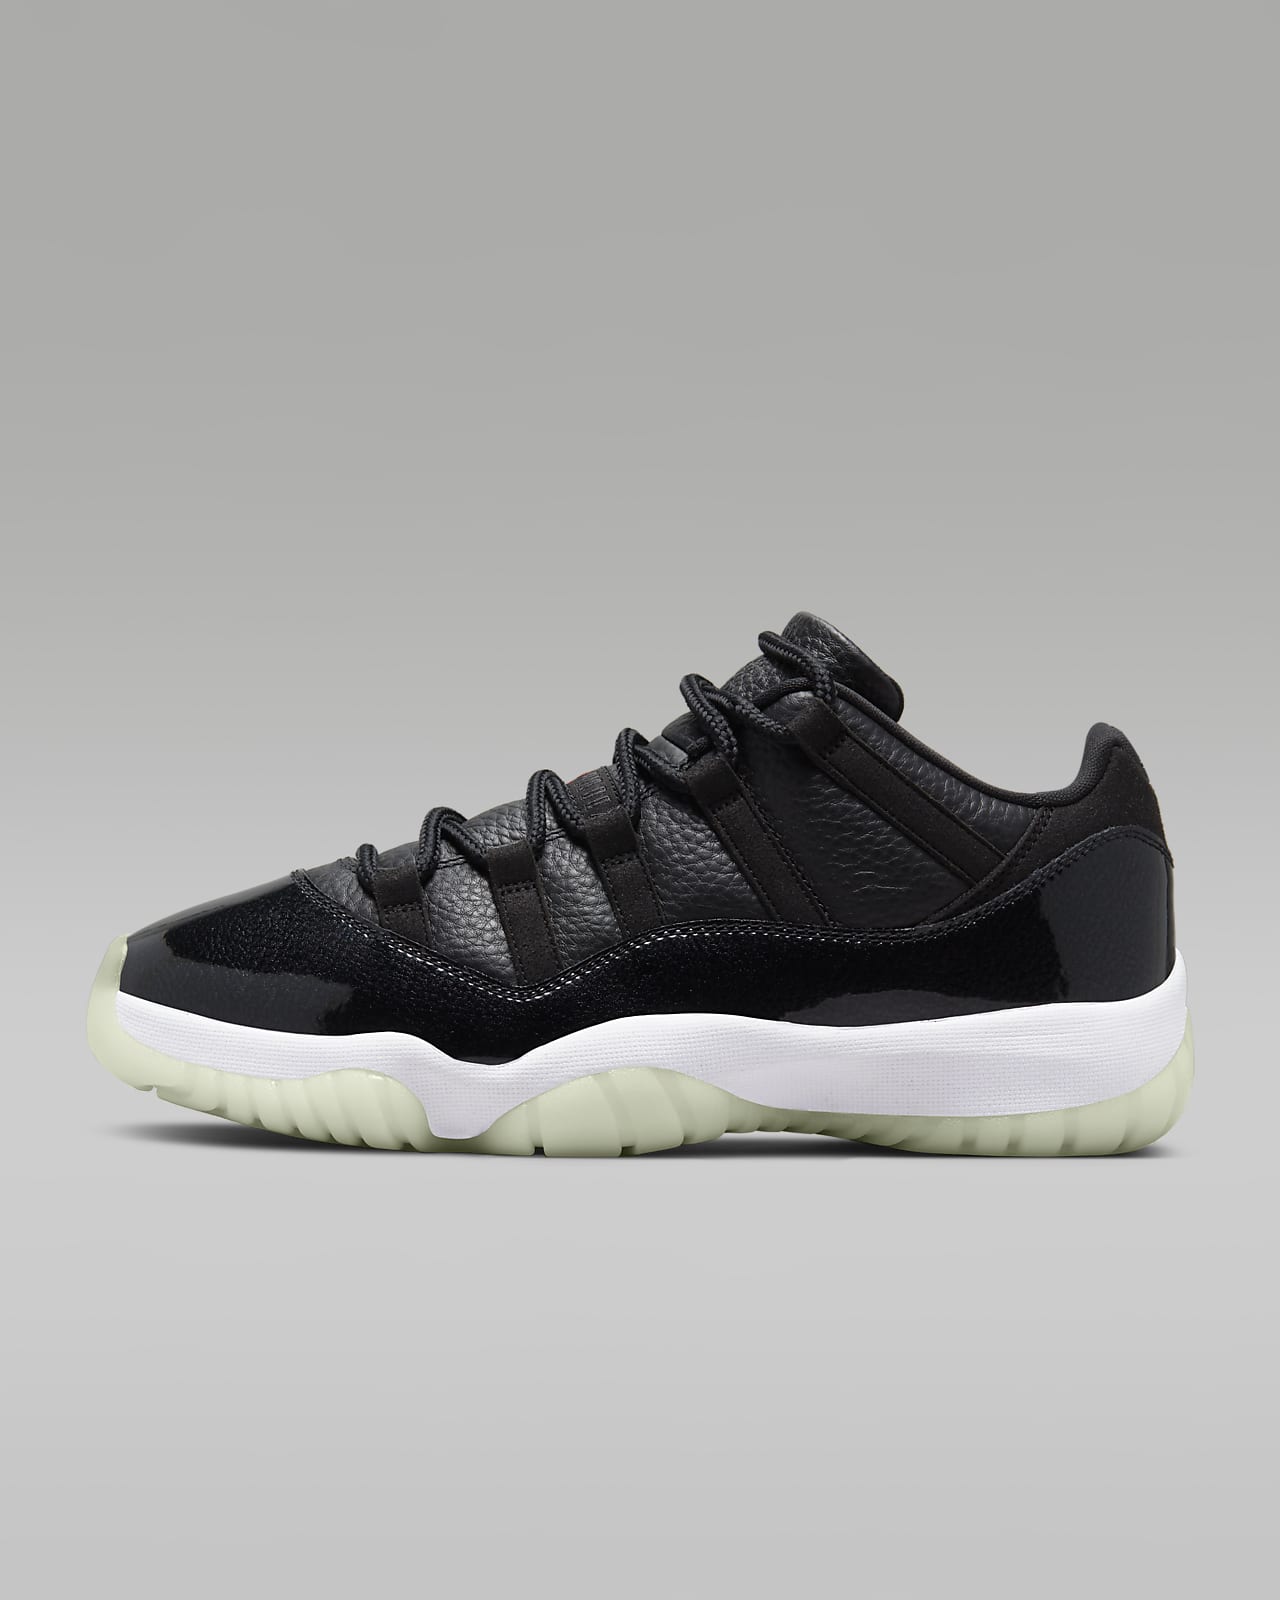 Air Jordan 11 Retro Low Men's Shoes. Nike LU